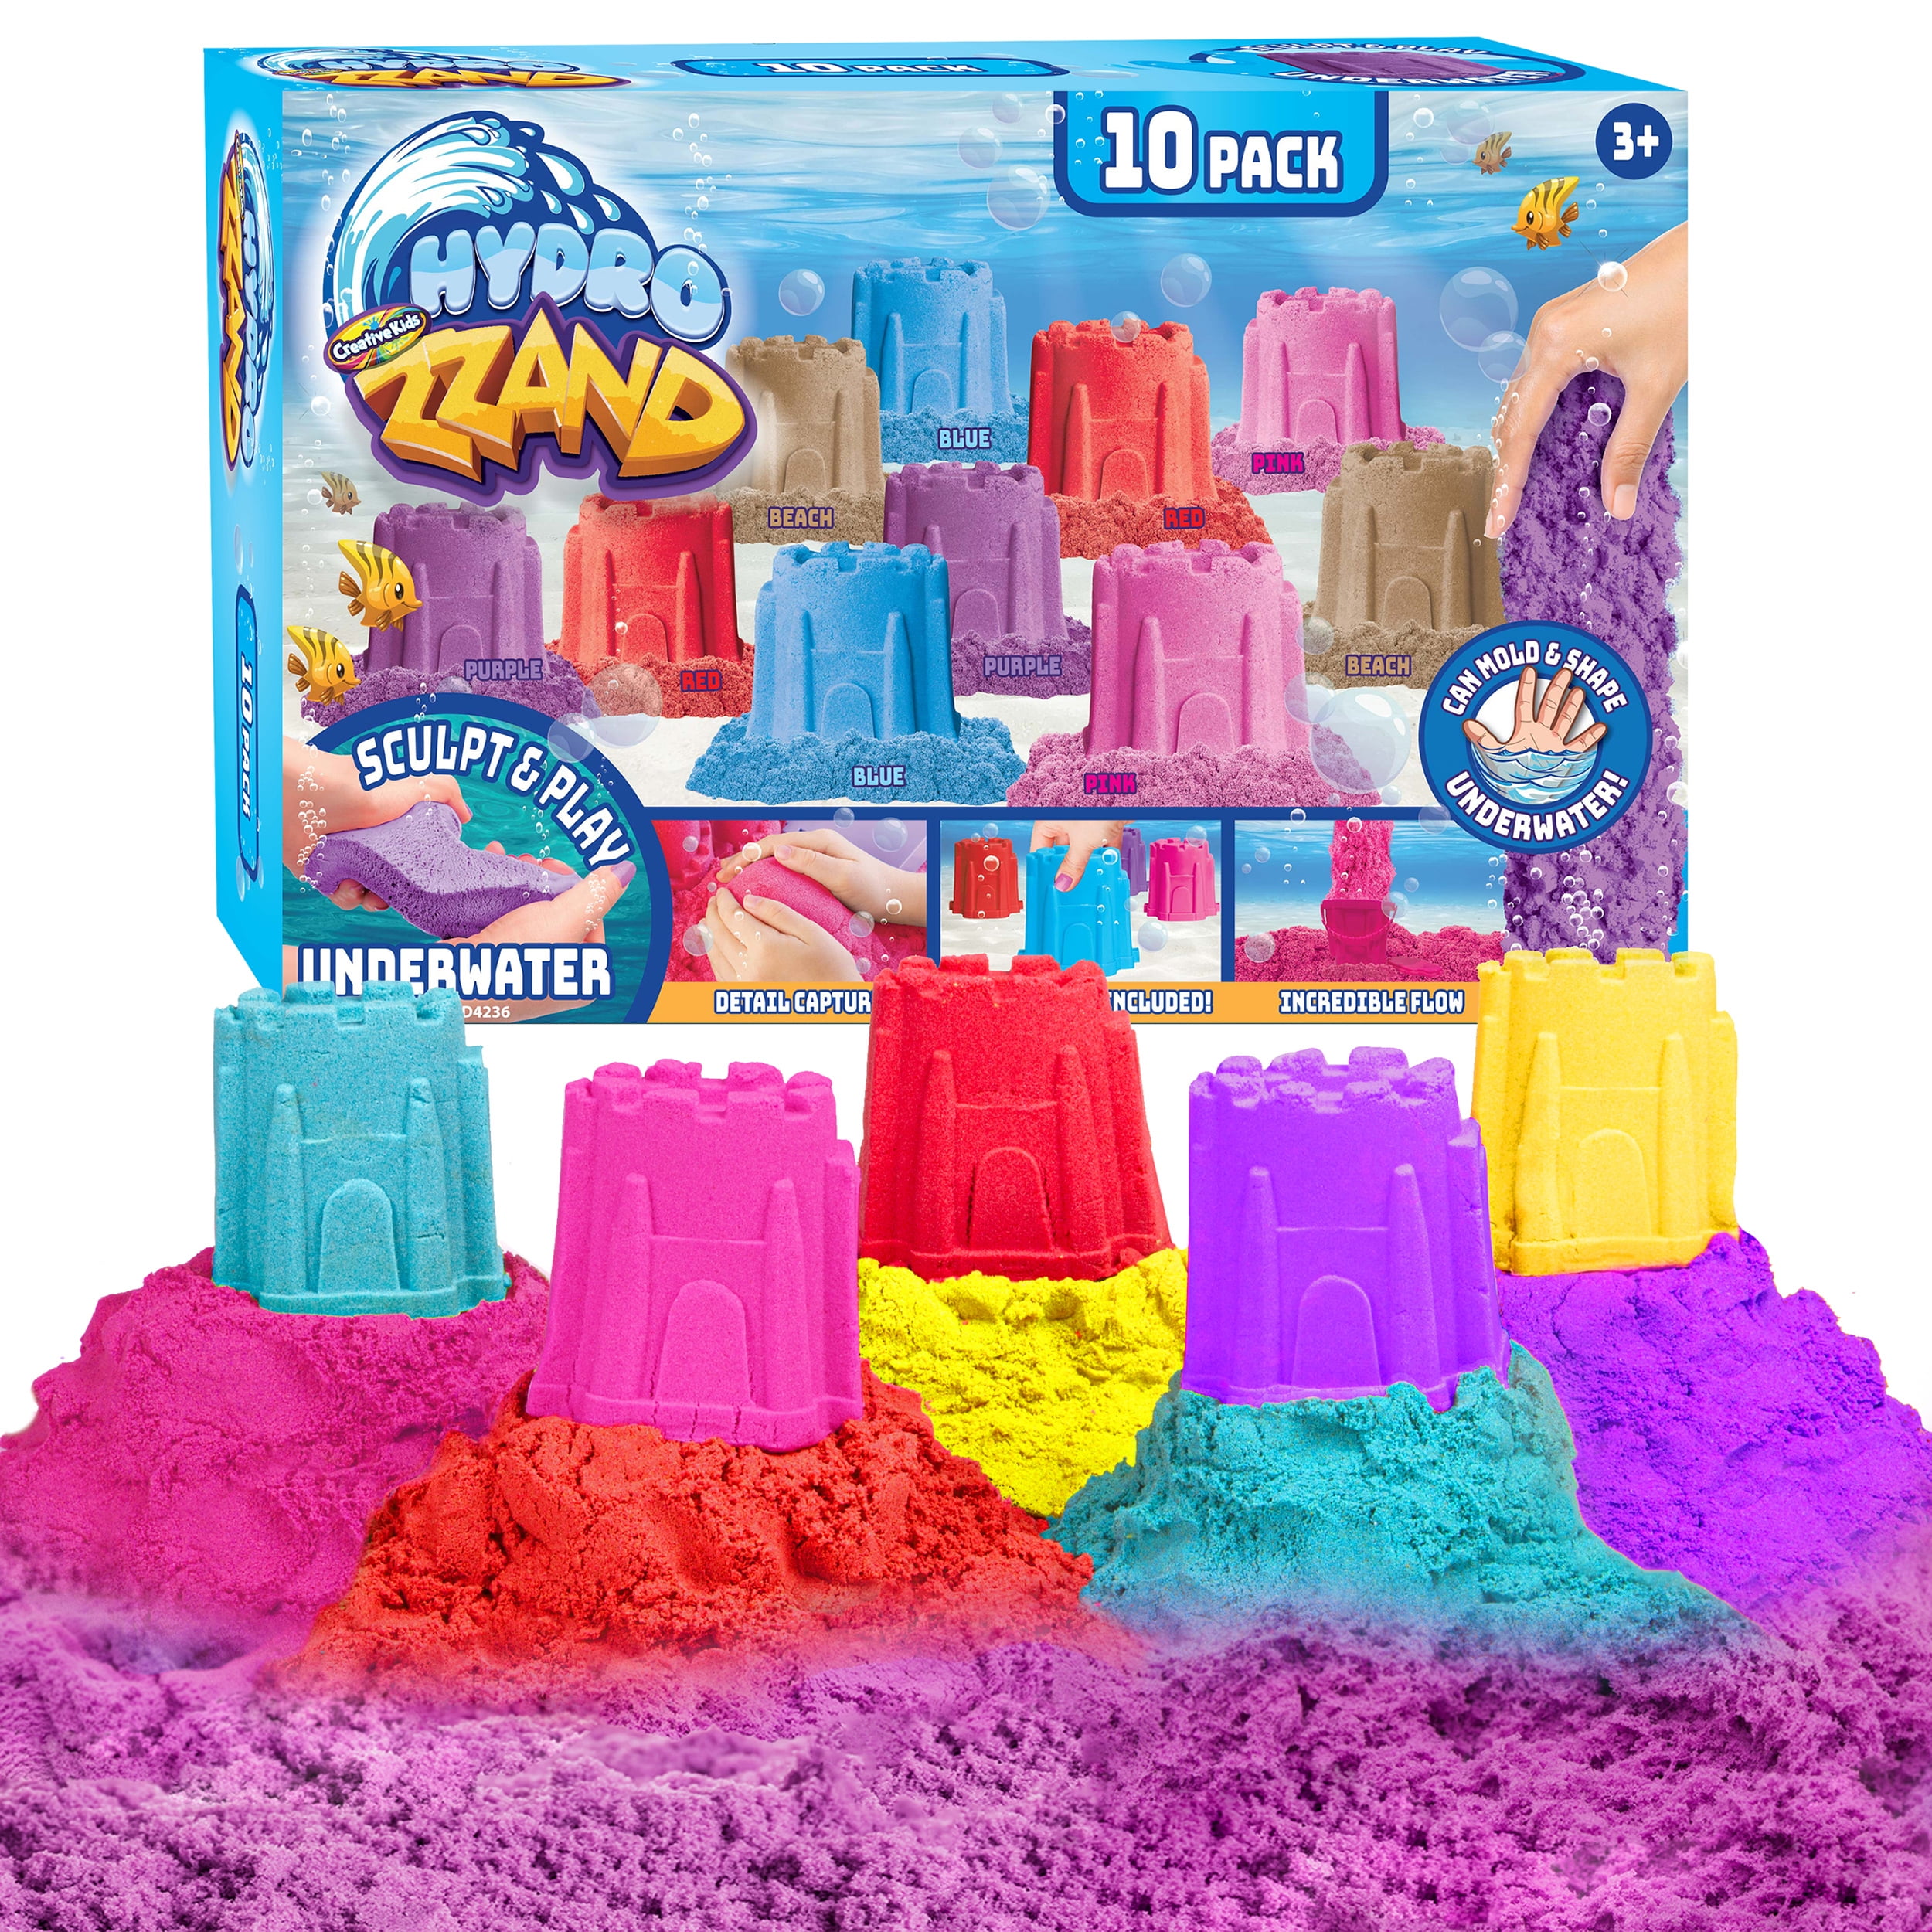 DIY Candle Art set. Blue, purple, white + 1 SURPRISE color - Toy Land -  wholesale store for children's goods